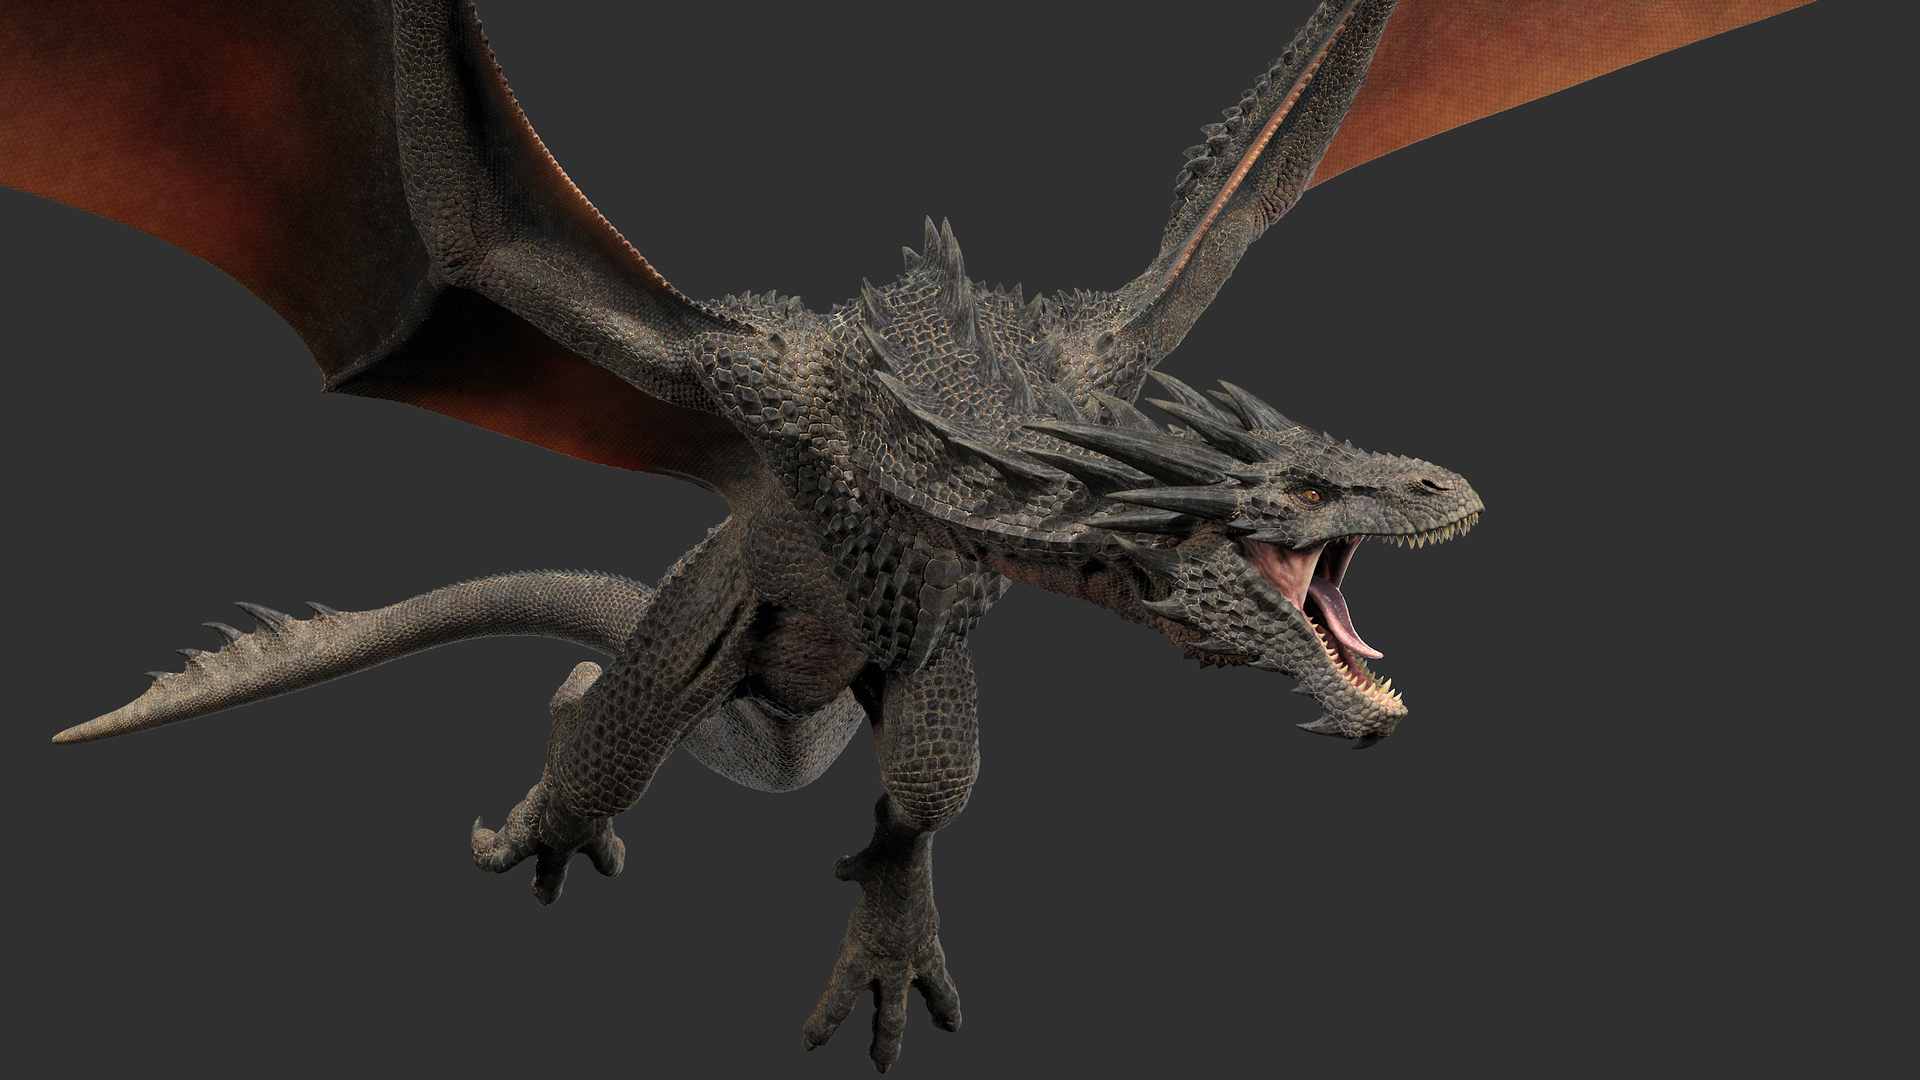 Jogos de Dragão: Mosca Dragon Simulator